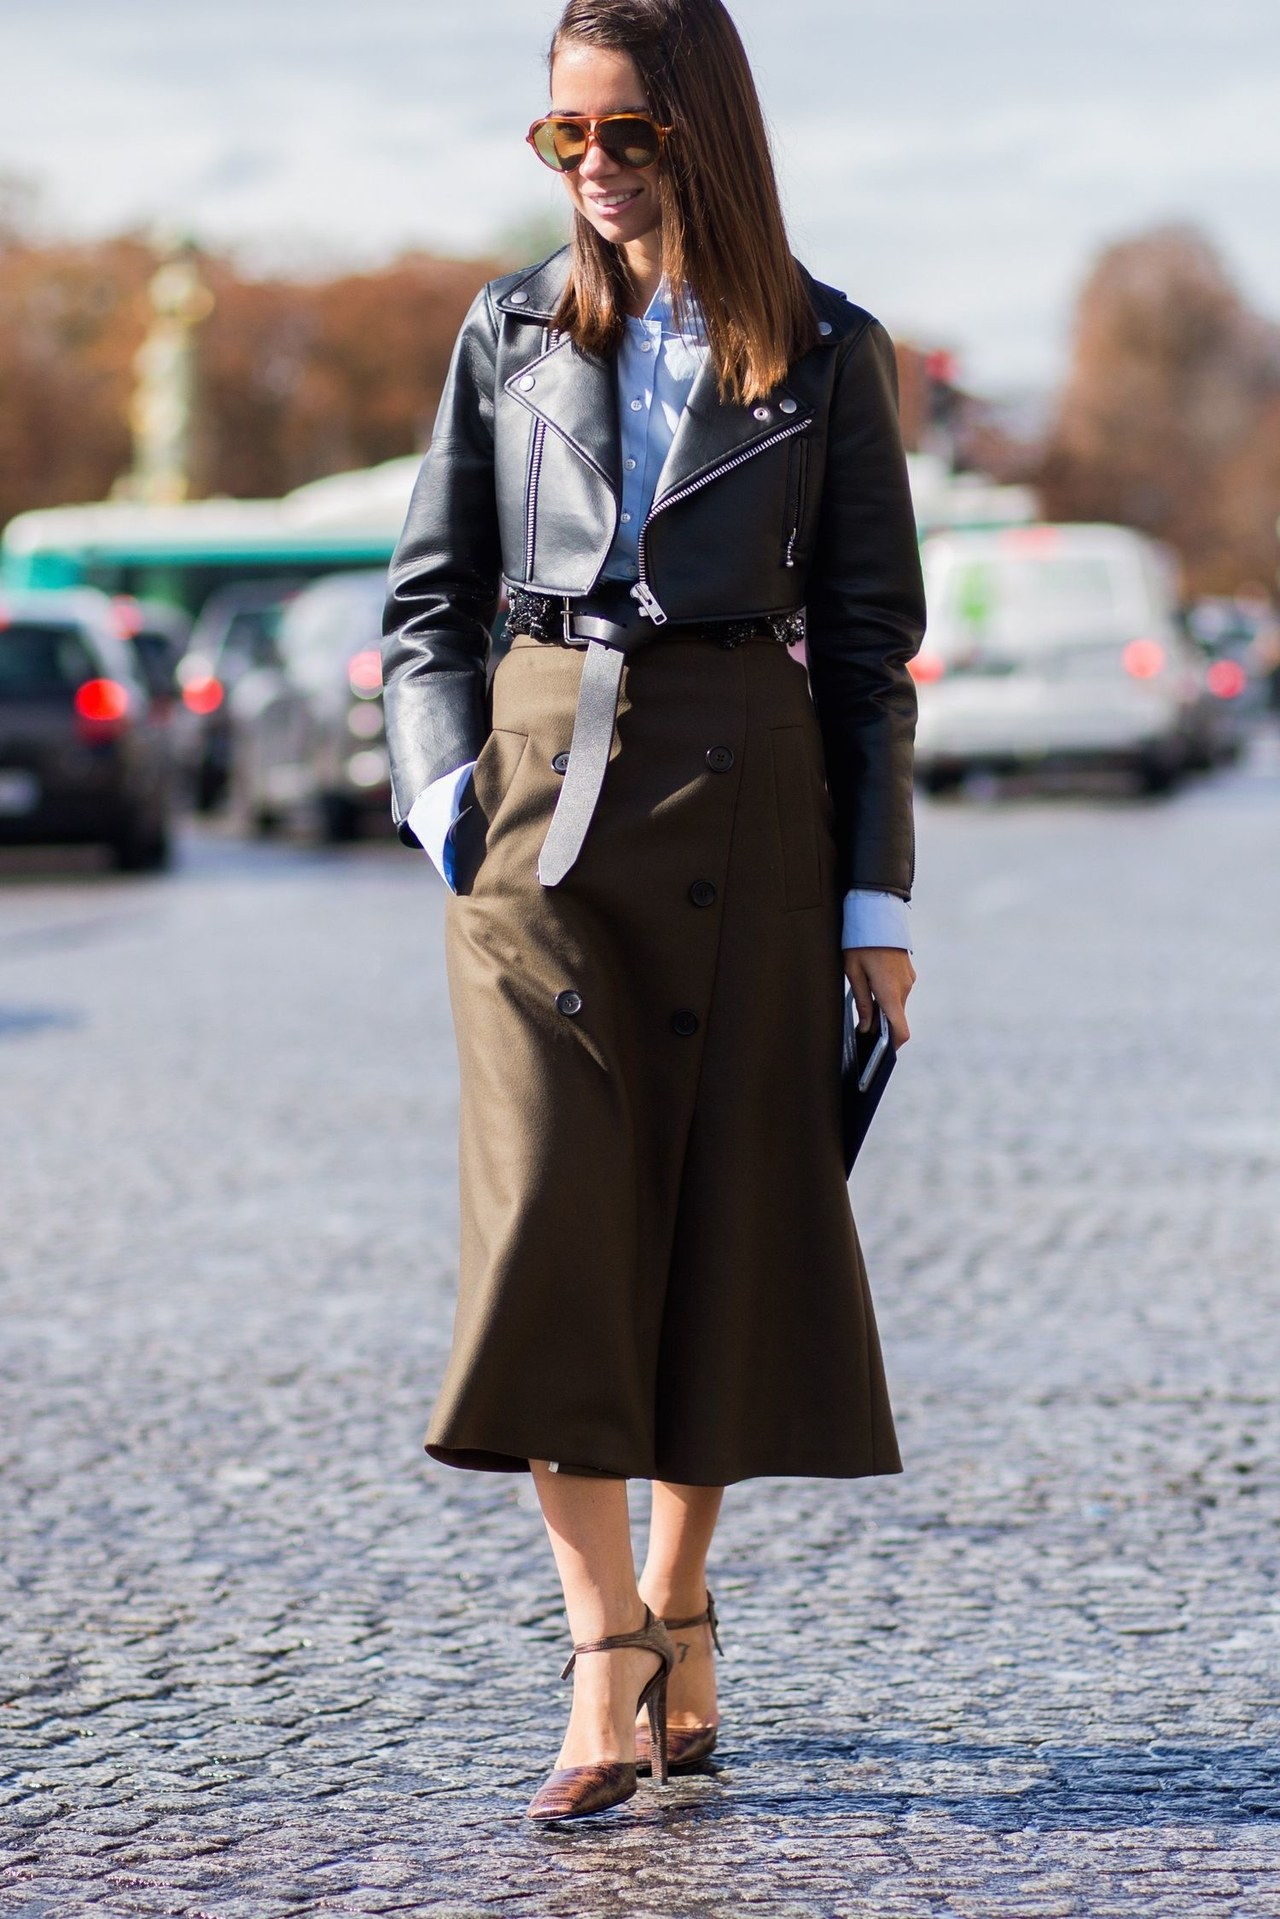 冷 weather winter interview outfit midi skirt leather jacket